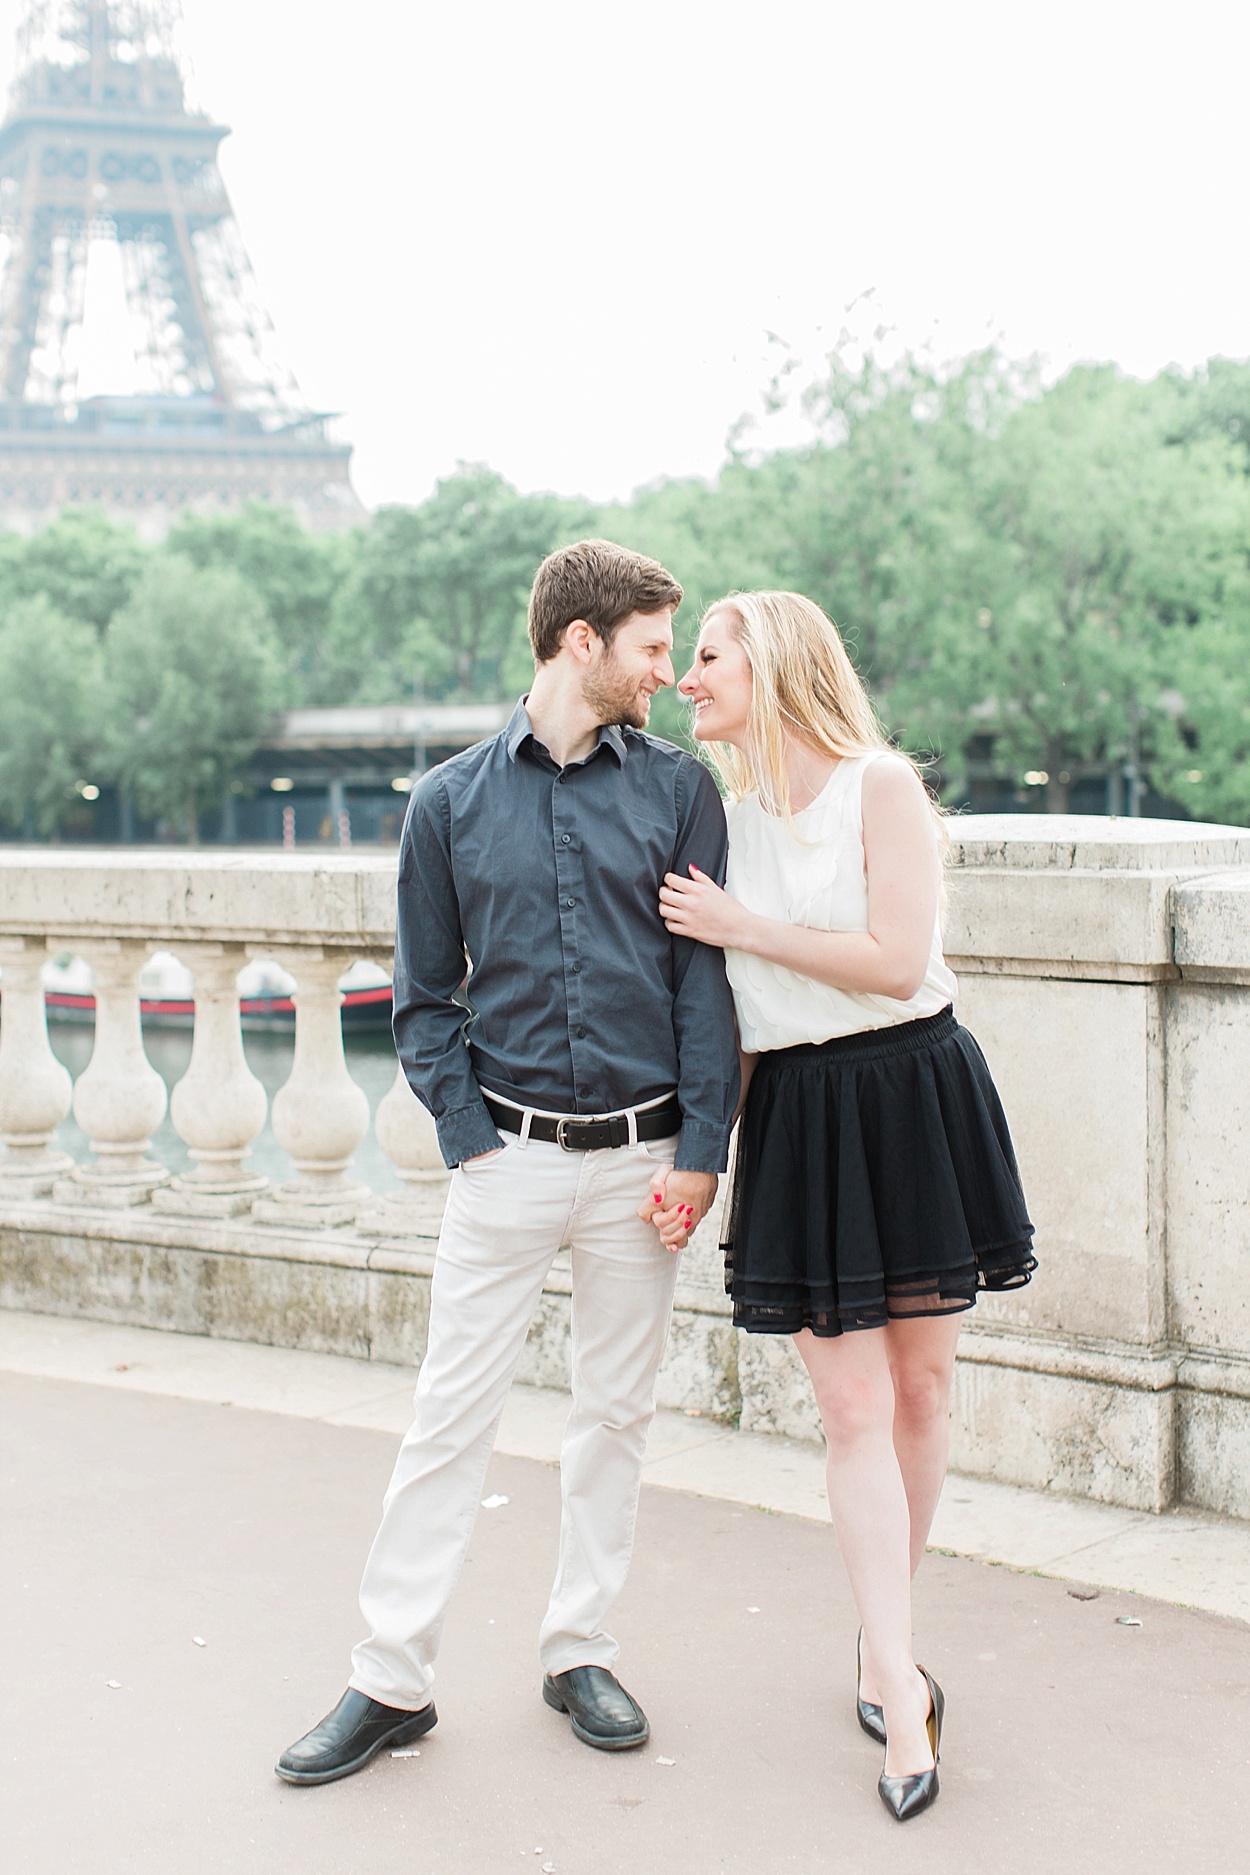 romantic Paris, France portraits on the Seine | Abby Grace Photography